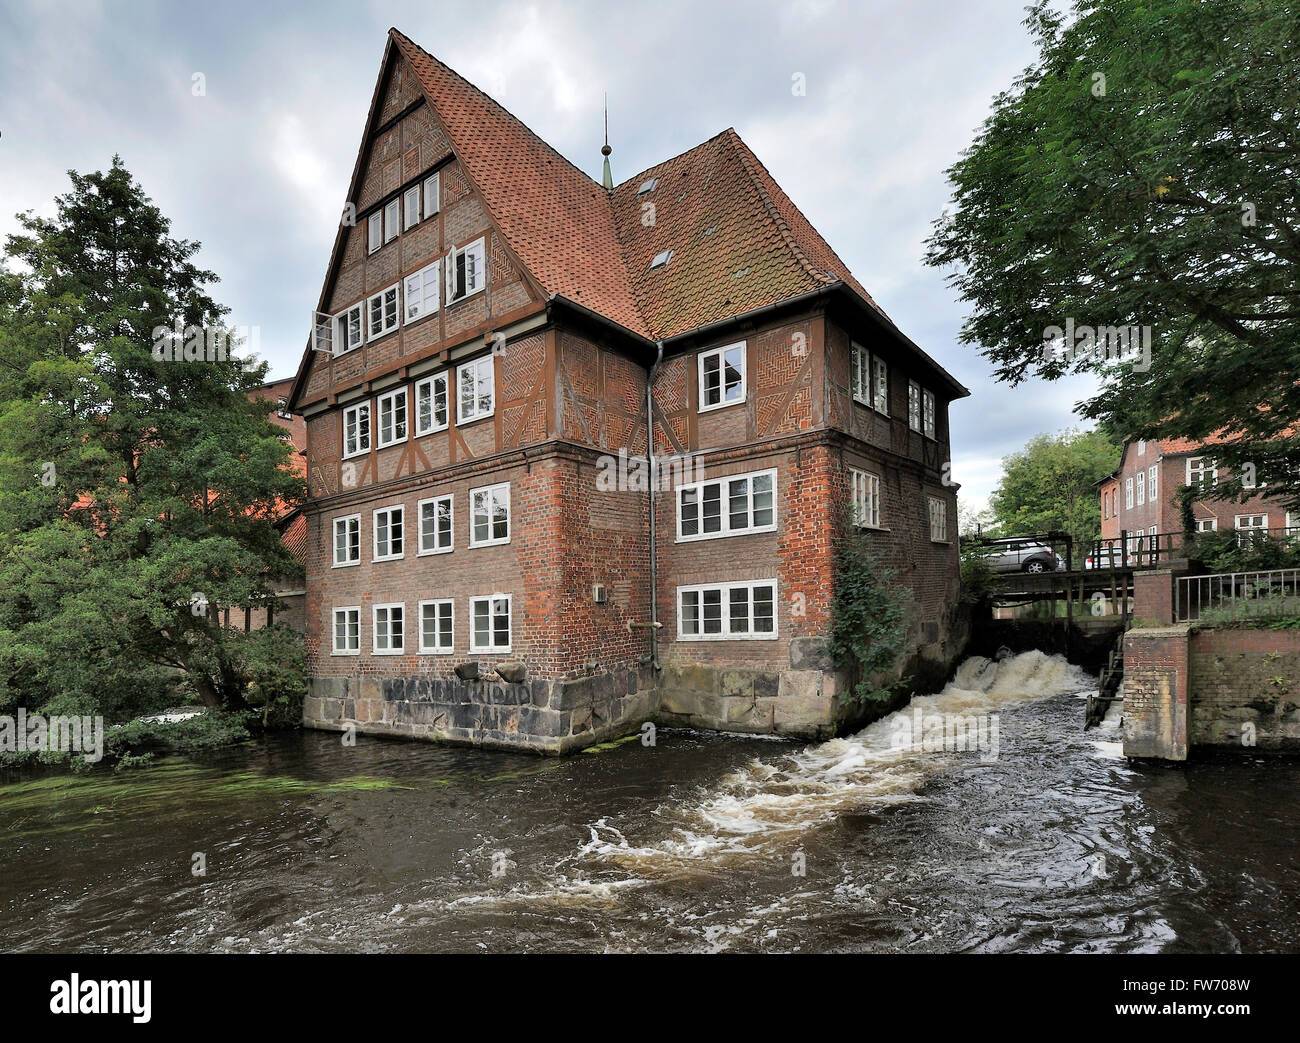 Ratsmuhle aufbauend auf Ilmenau River, Lüneburg, Deutschland Stockfoto